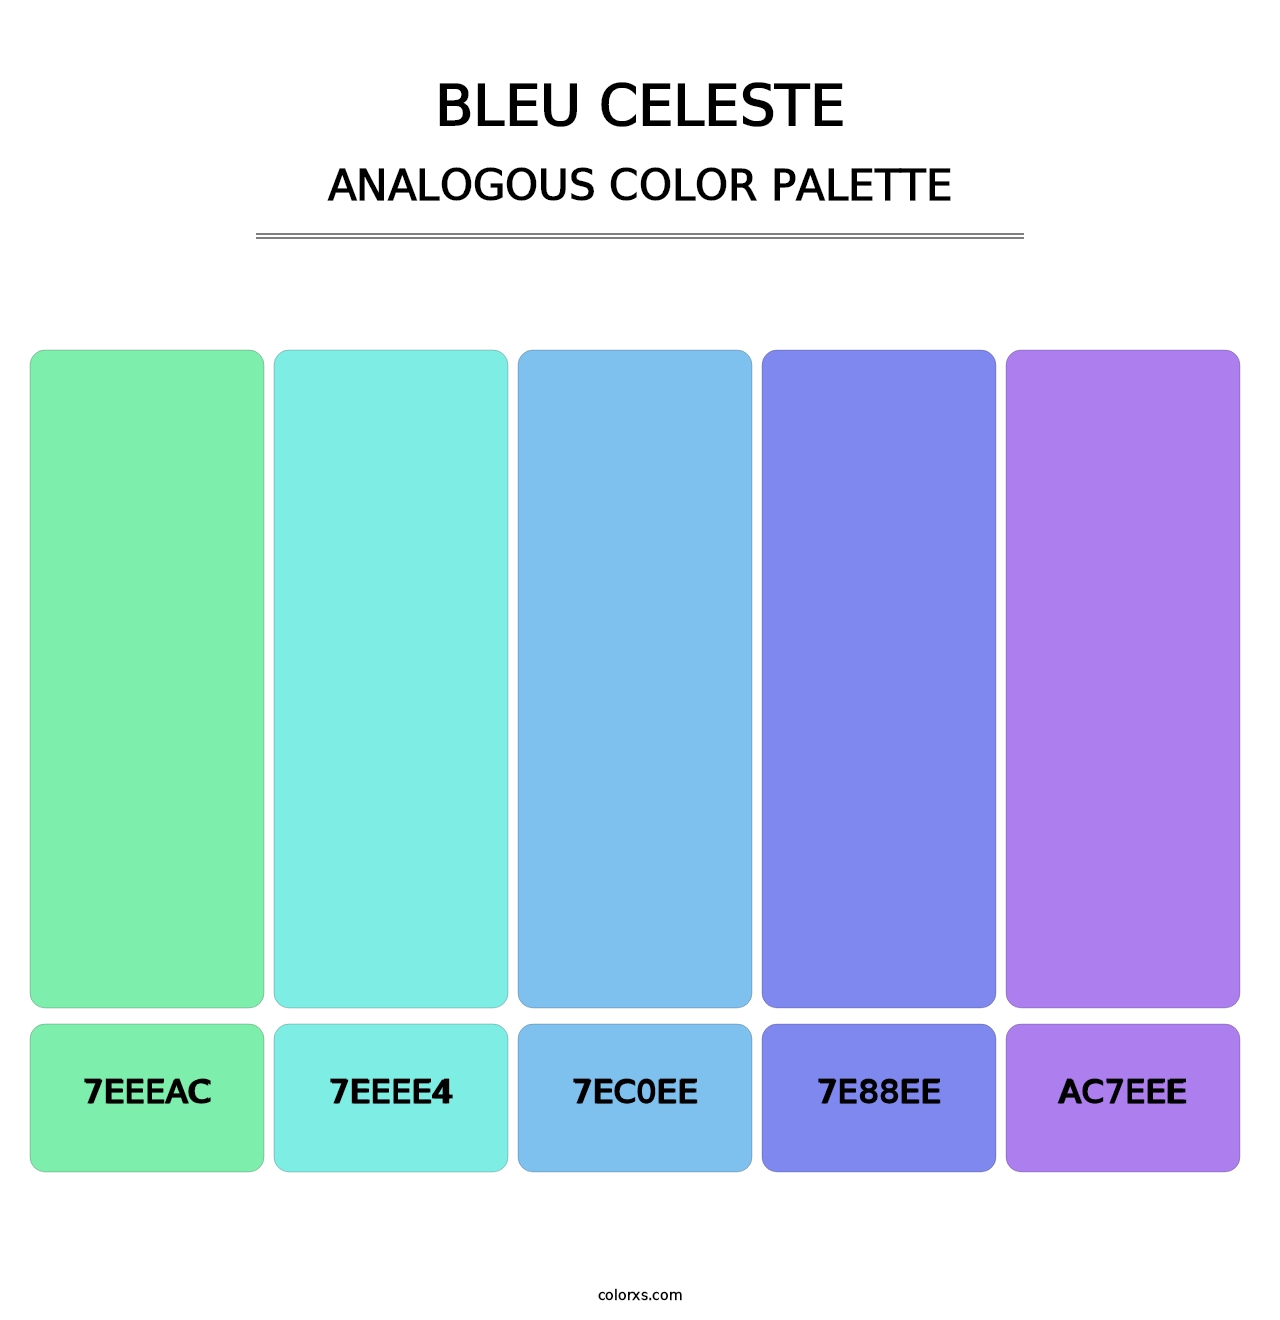 Bleu Celeste - Analogous Color Palette